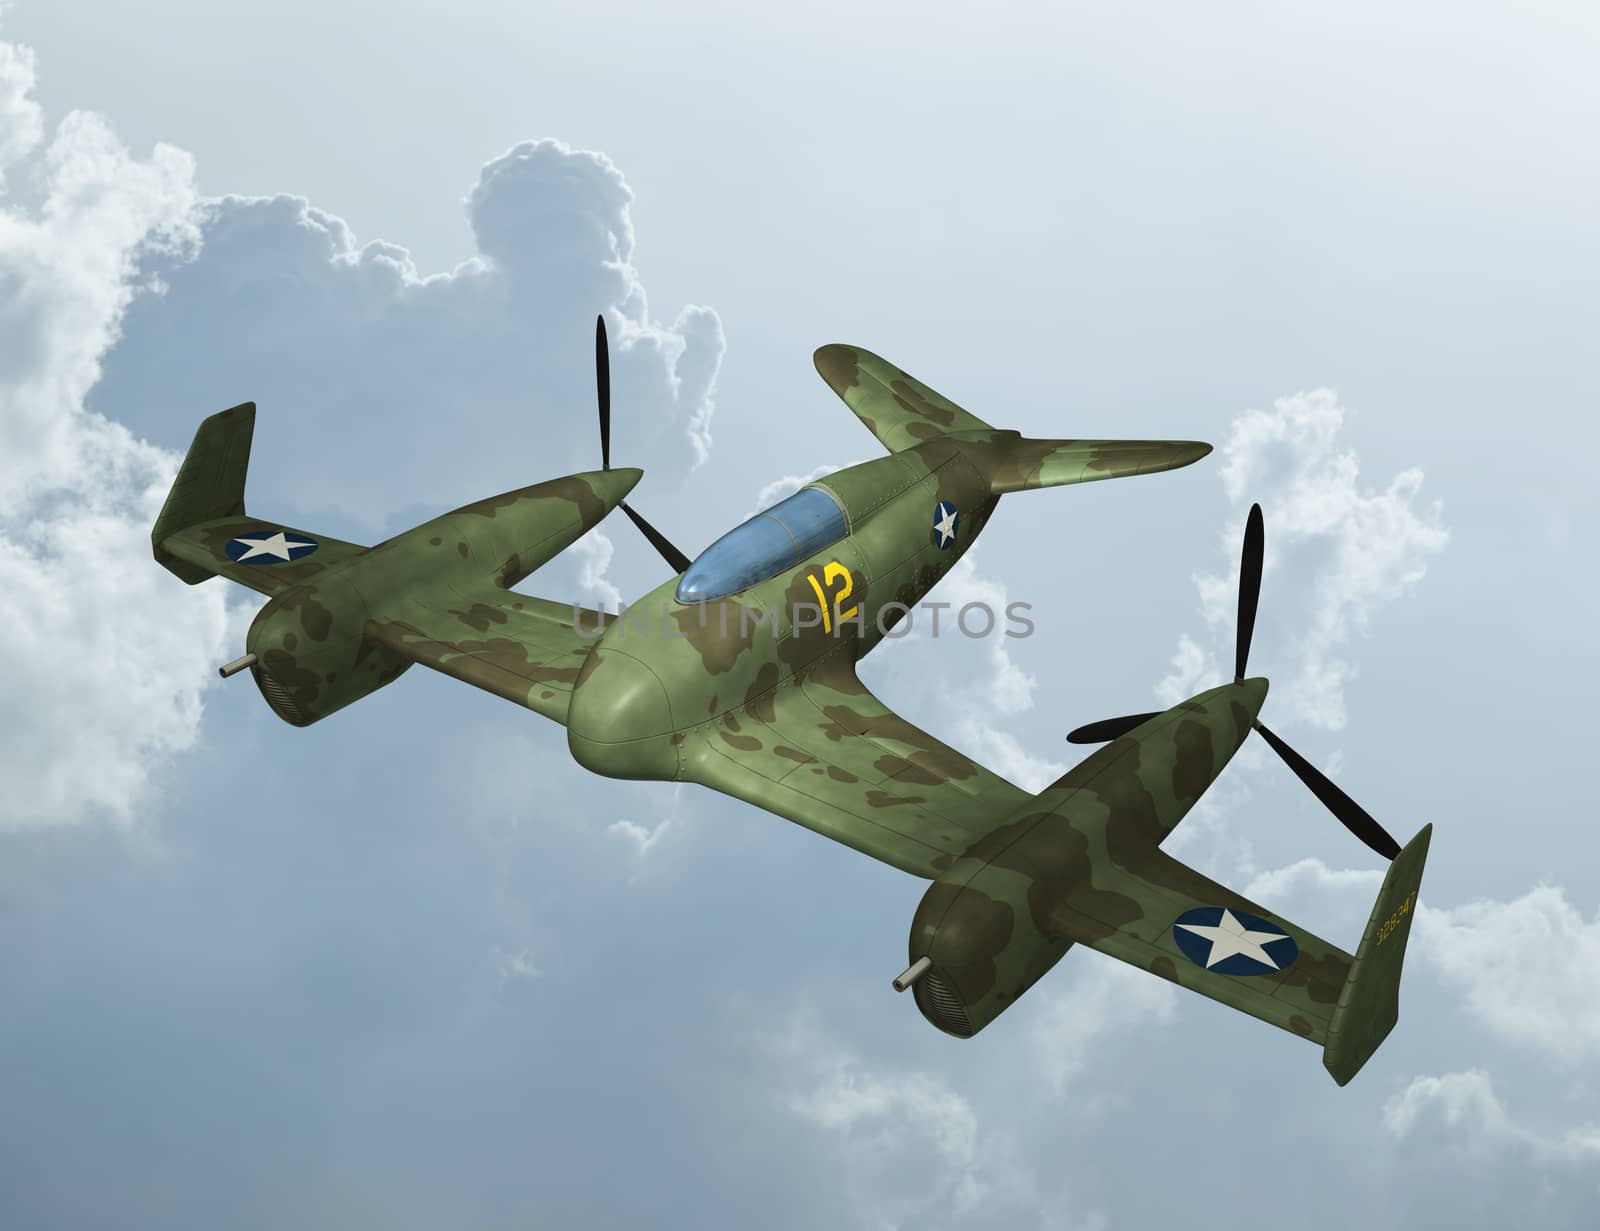 3D digital render of a plane on blue sky background